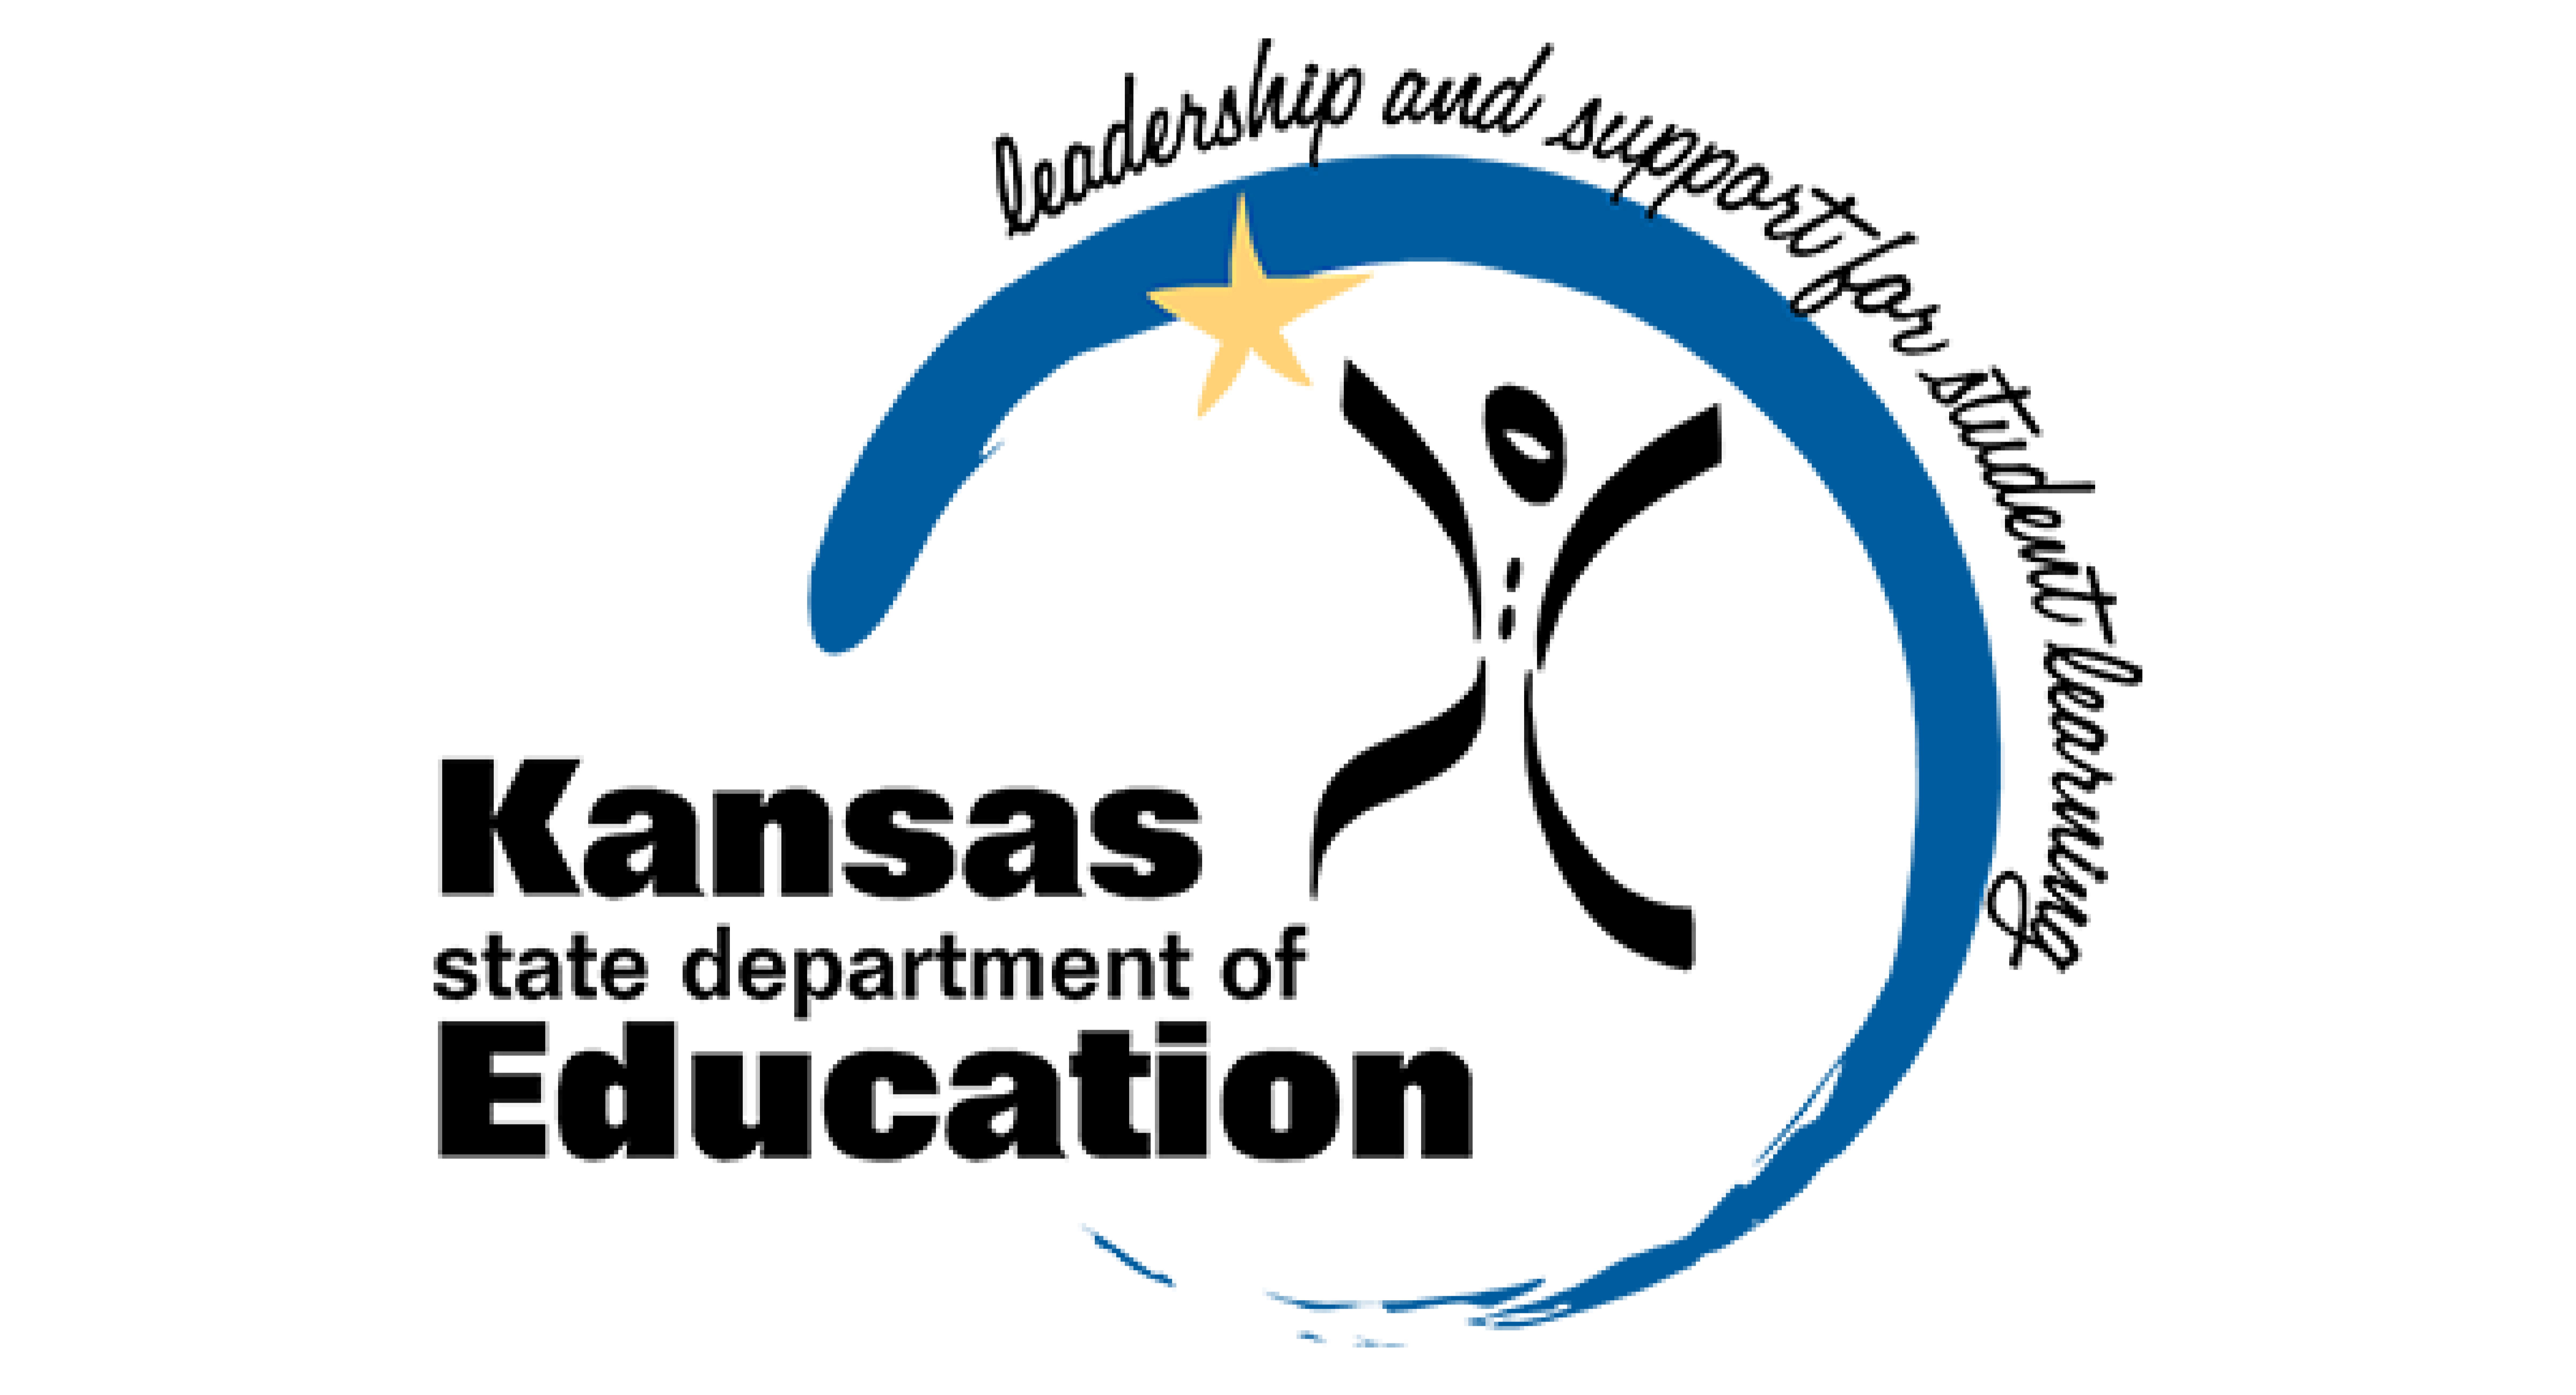 Kansas Department of Education logo